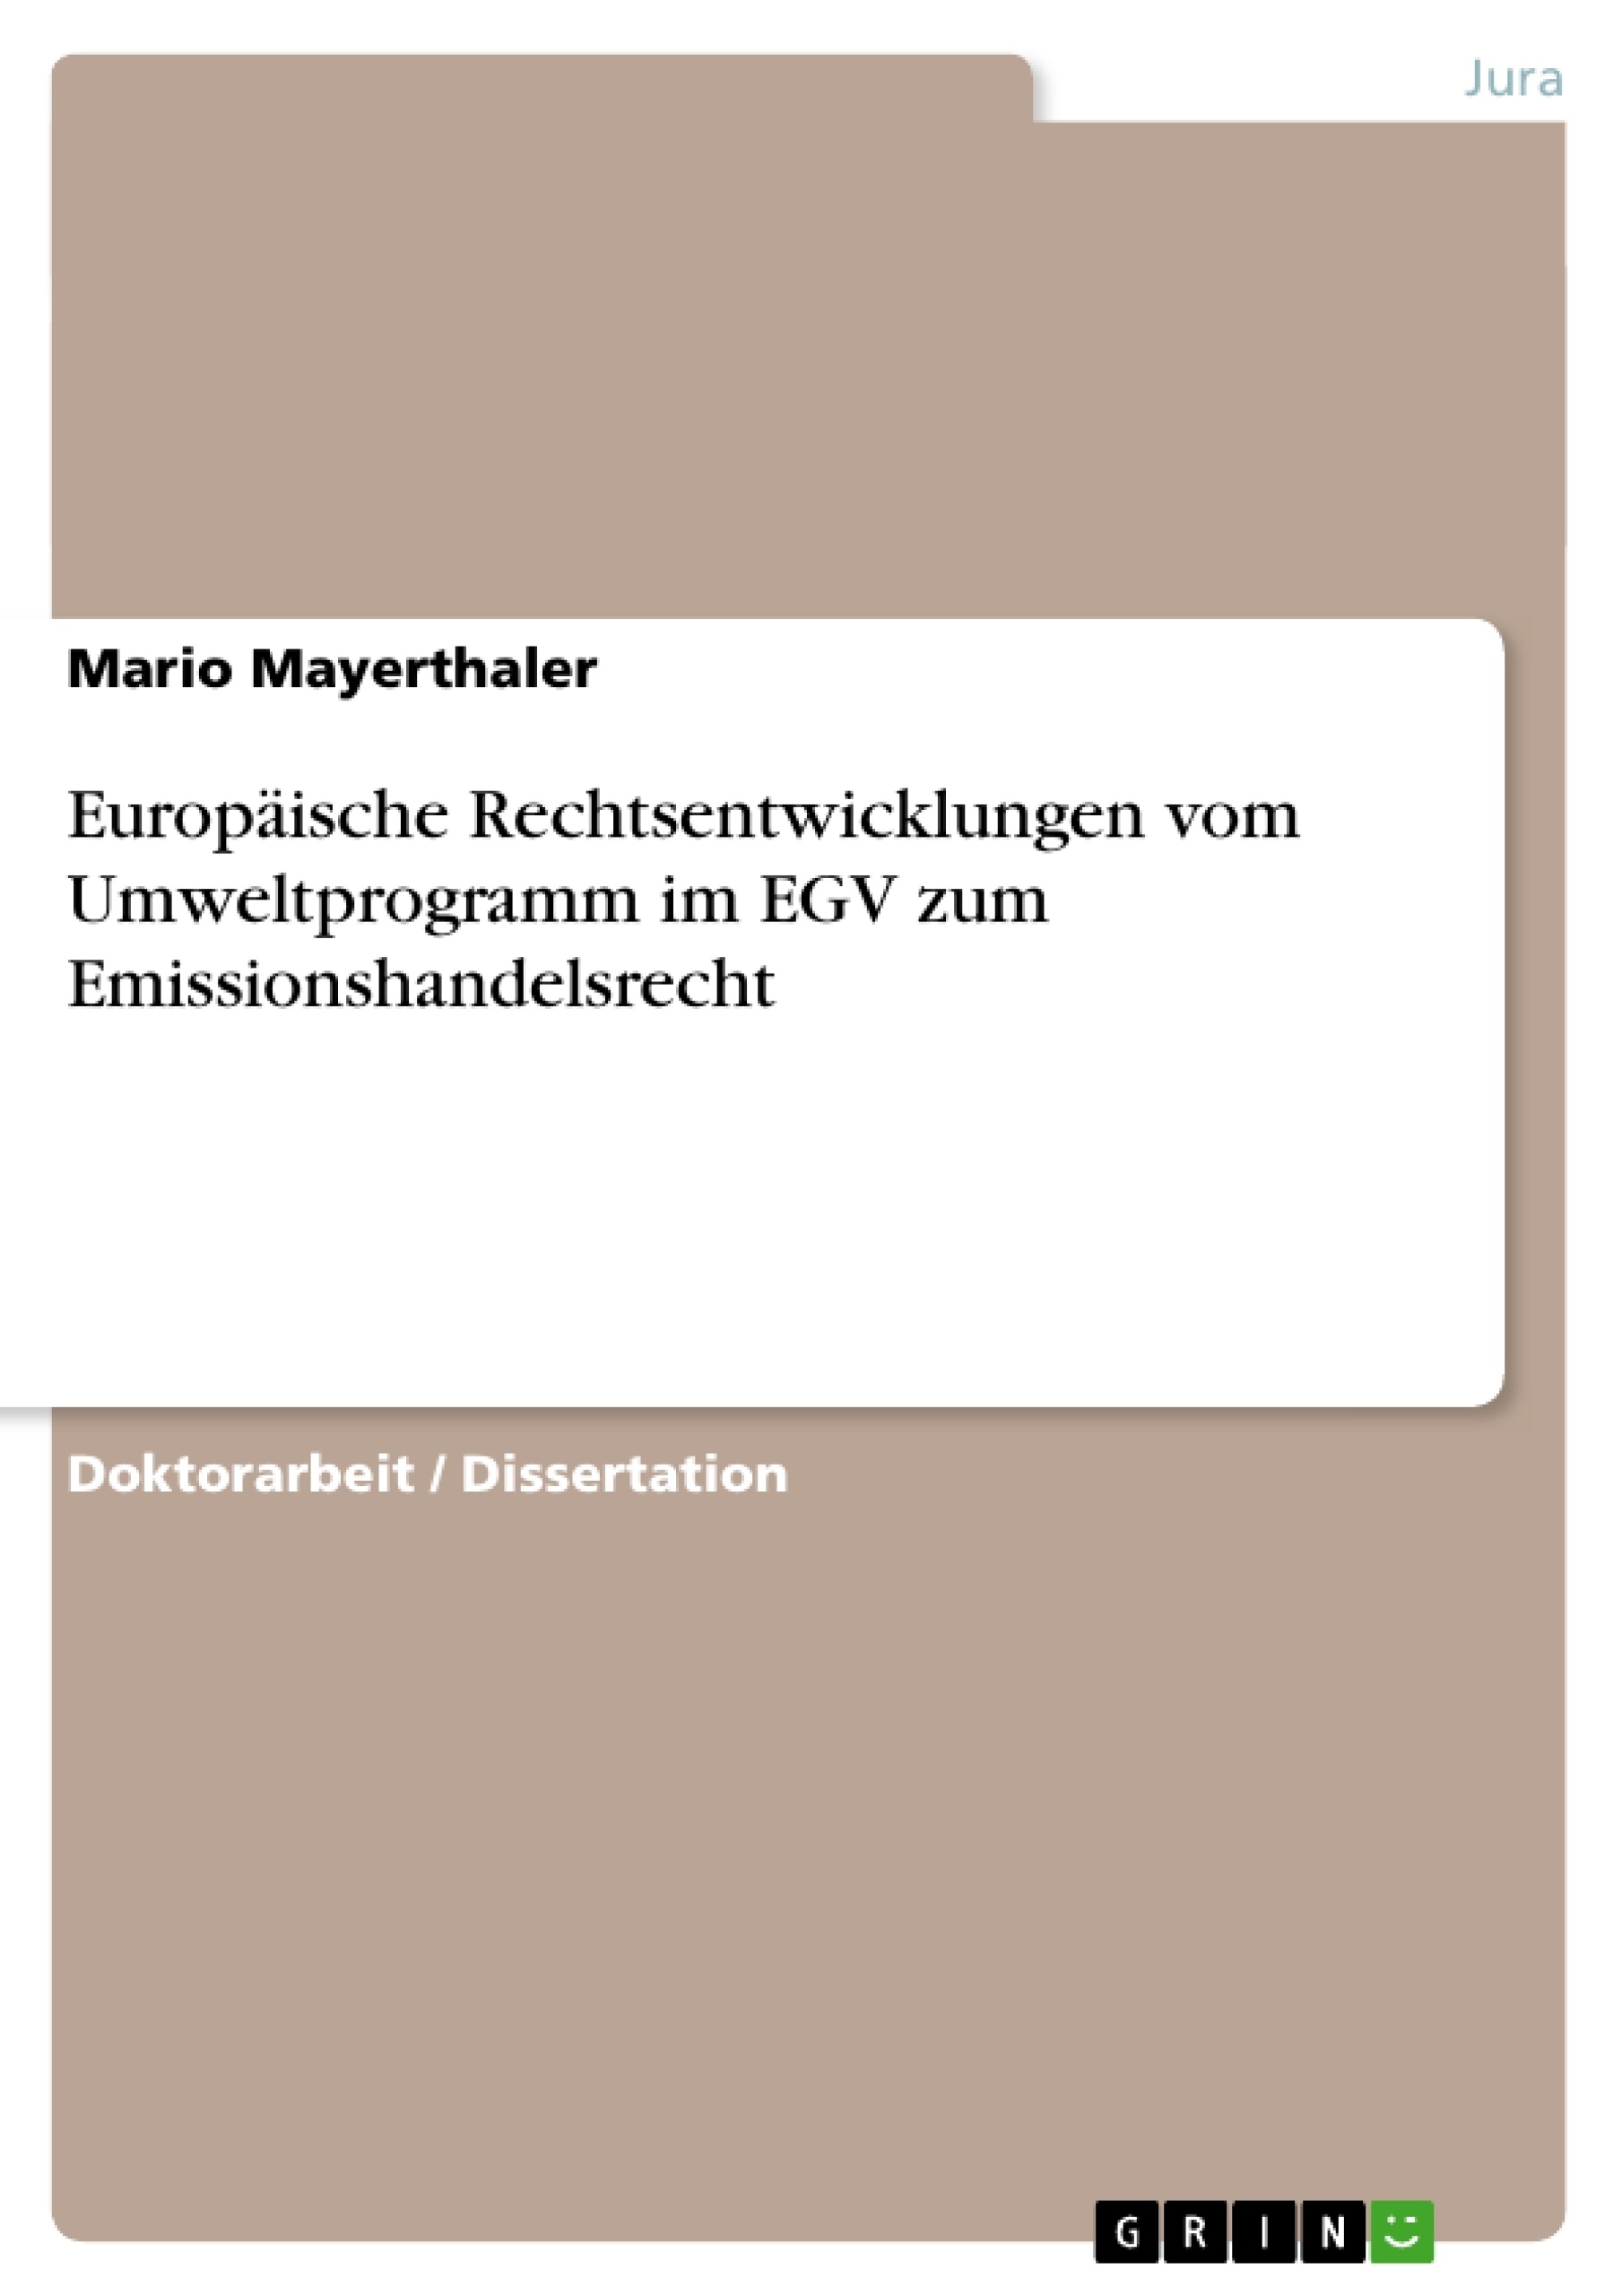 Title: Europäische Rechtsentwicklungen vom Umweltprogramm im EGV zum Emissionshandelsrecht